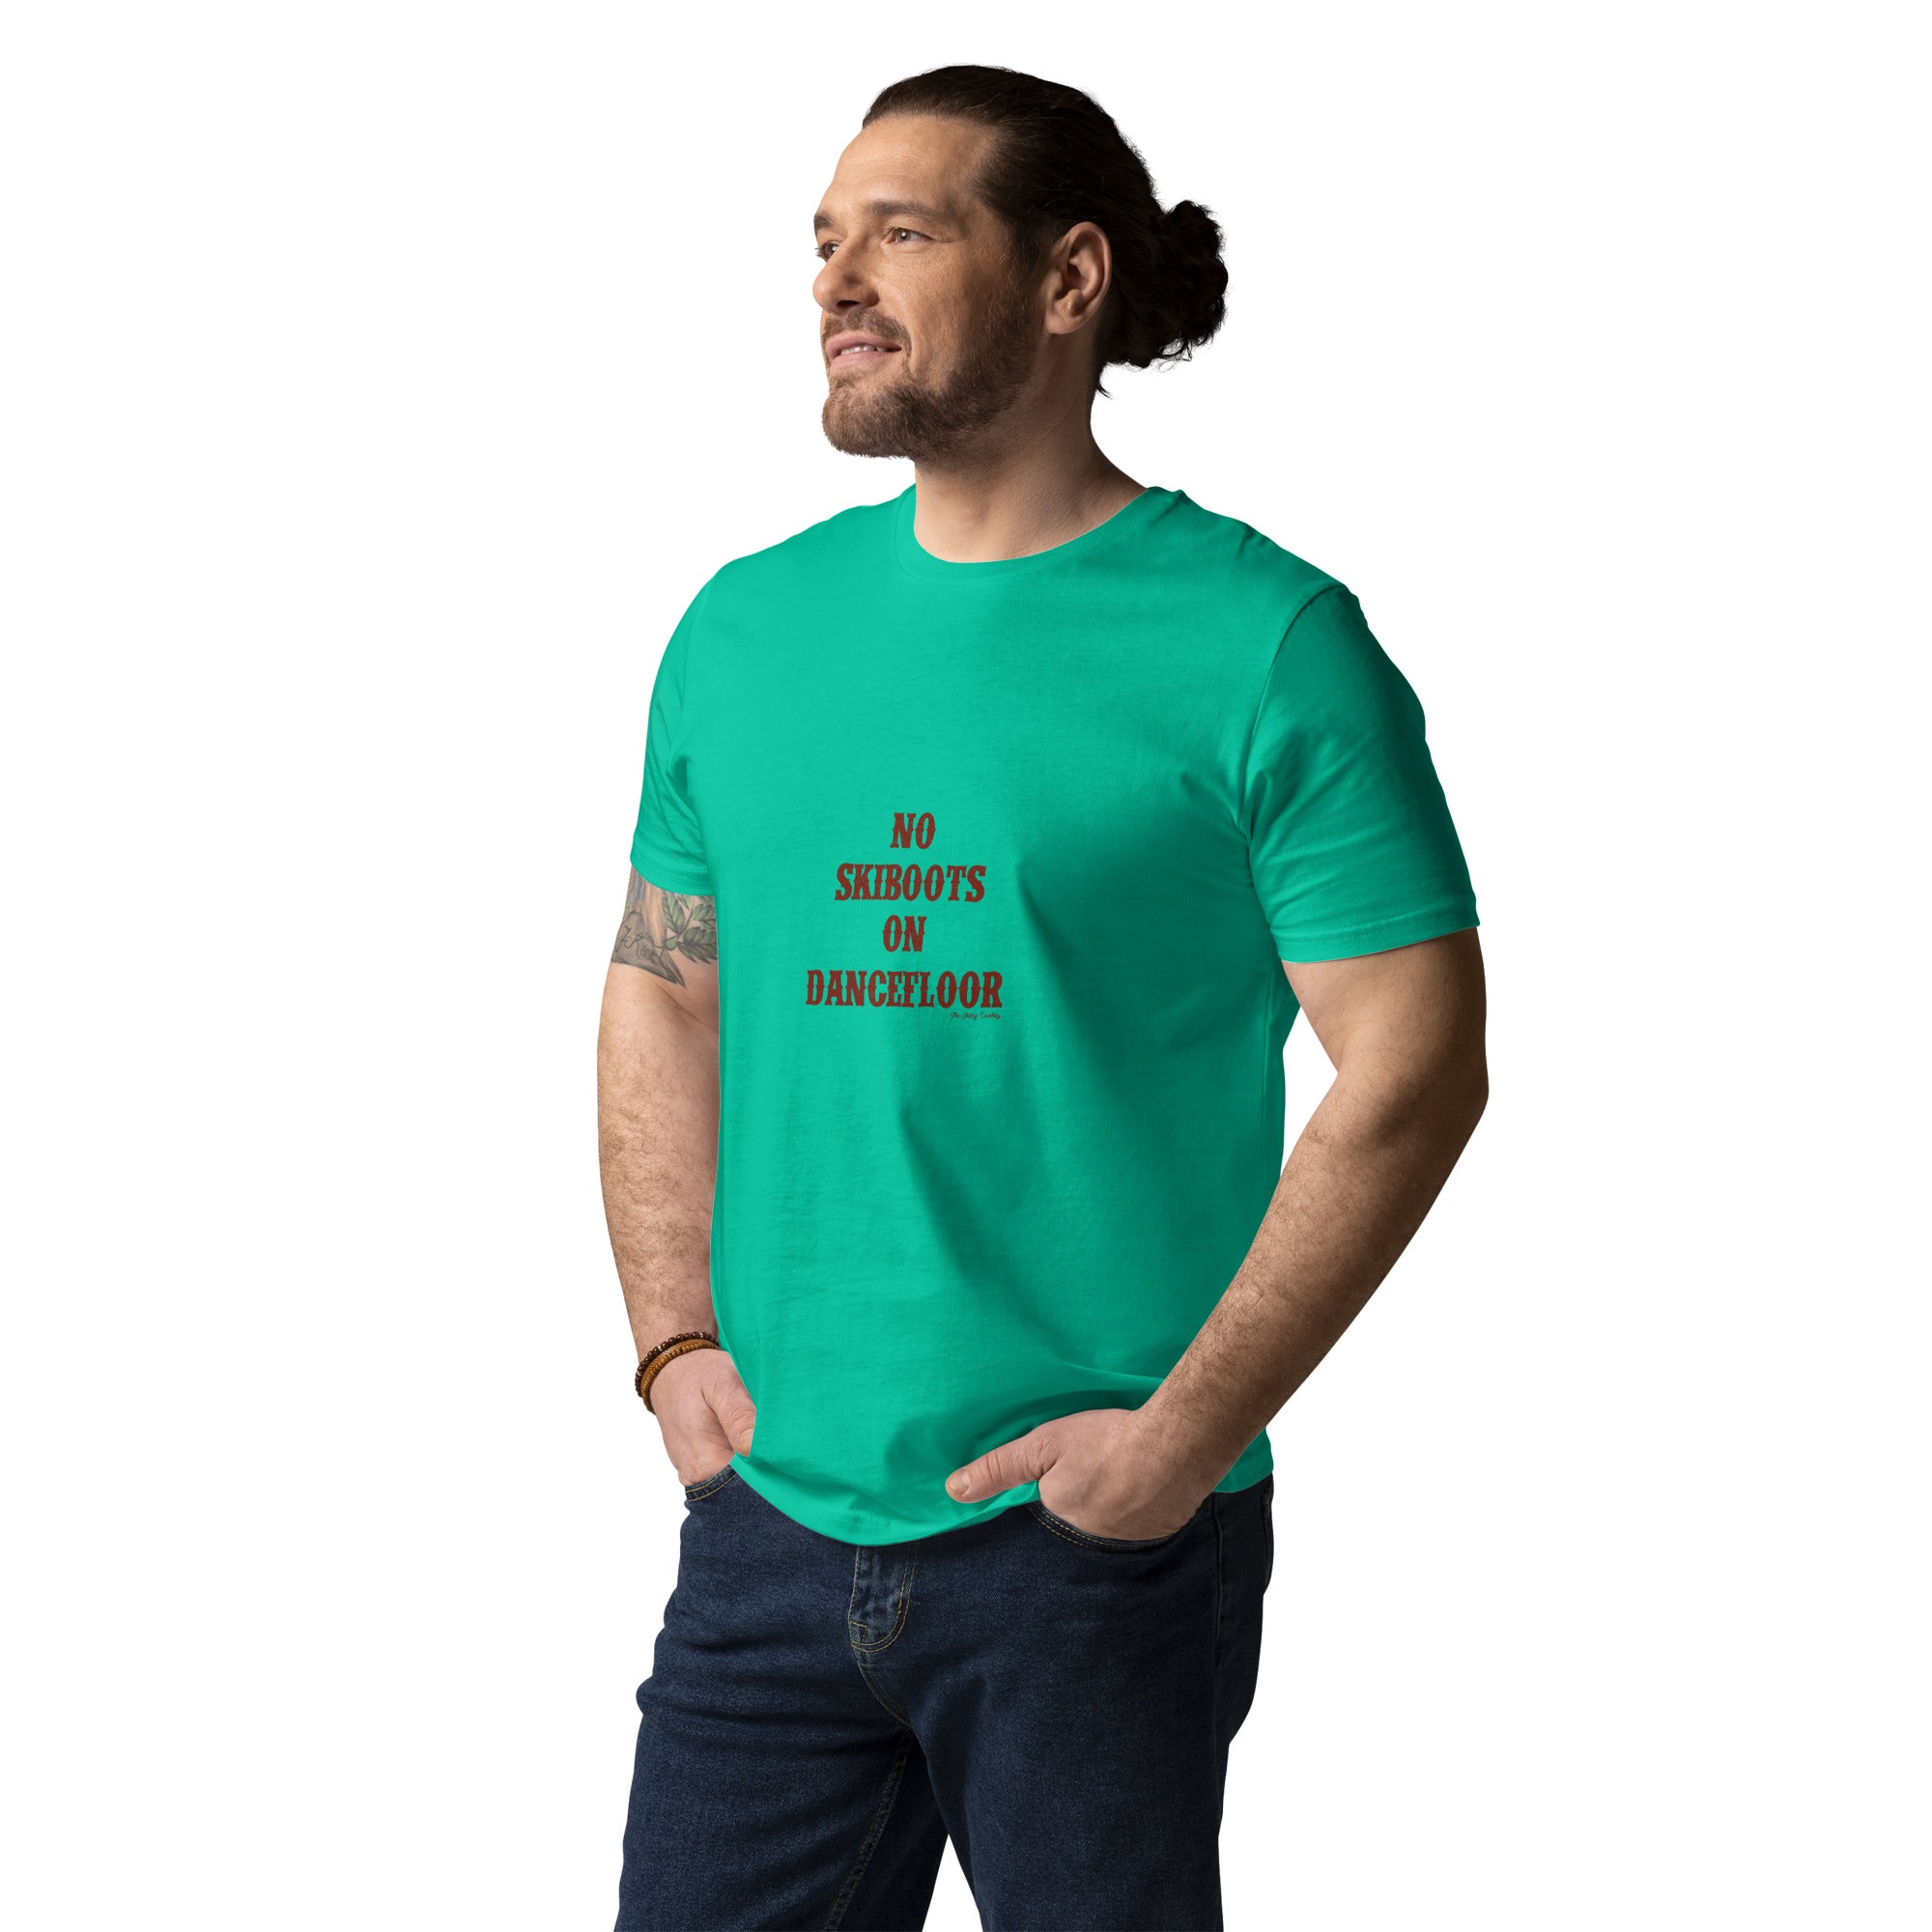 T-shirt unisexe en coton biologique No Skiboots on Dancefloor texte foncé